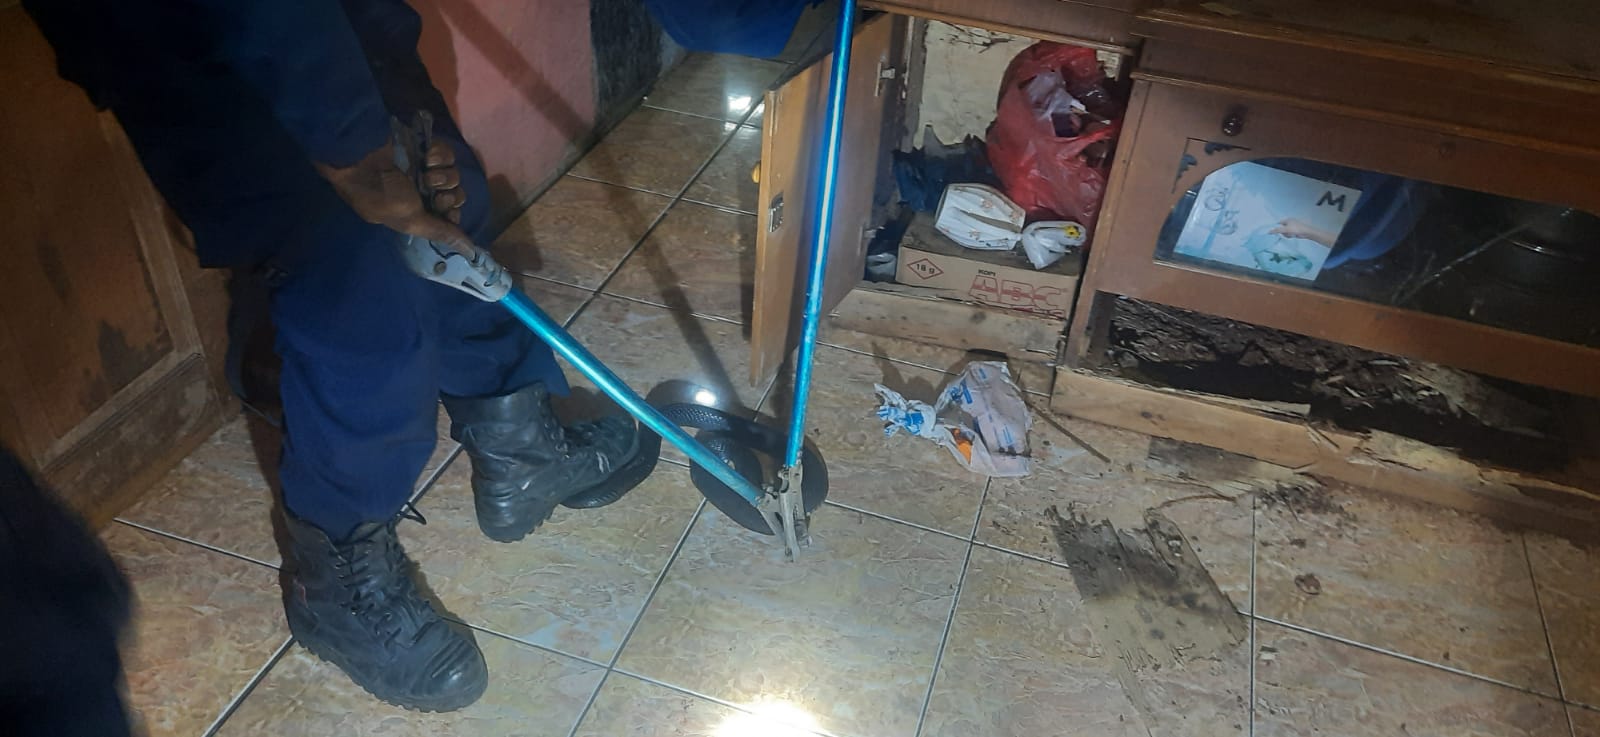 Pemilk Rumah di Kabupaten Bekasi Diganggu Belasan Ular Kobra Hingga Mengungsi